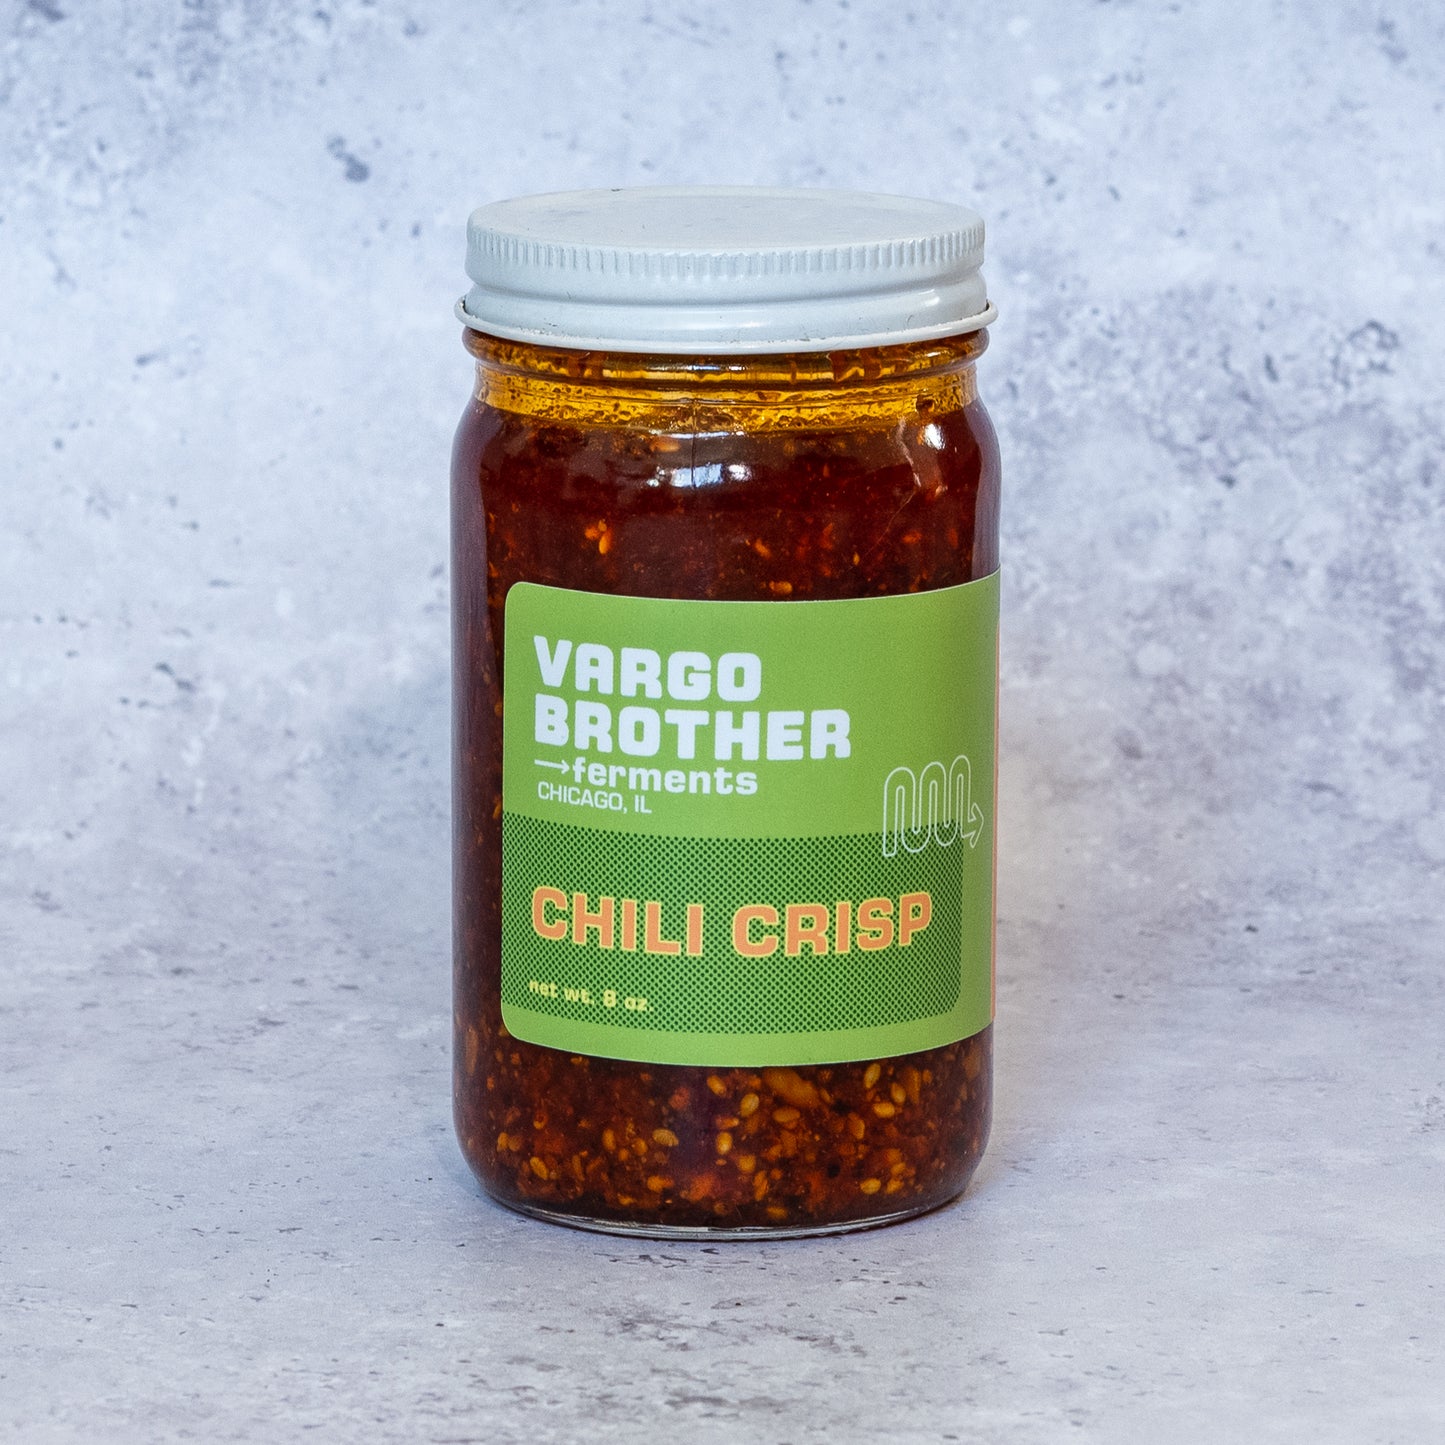 Original Chili Crisp